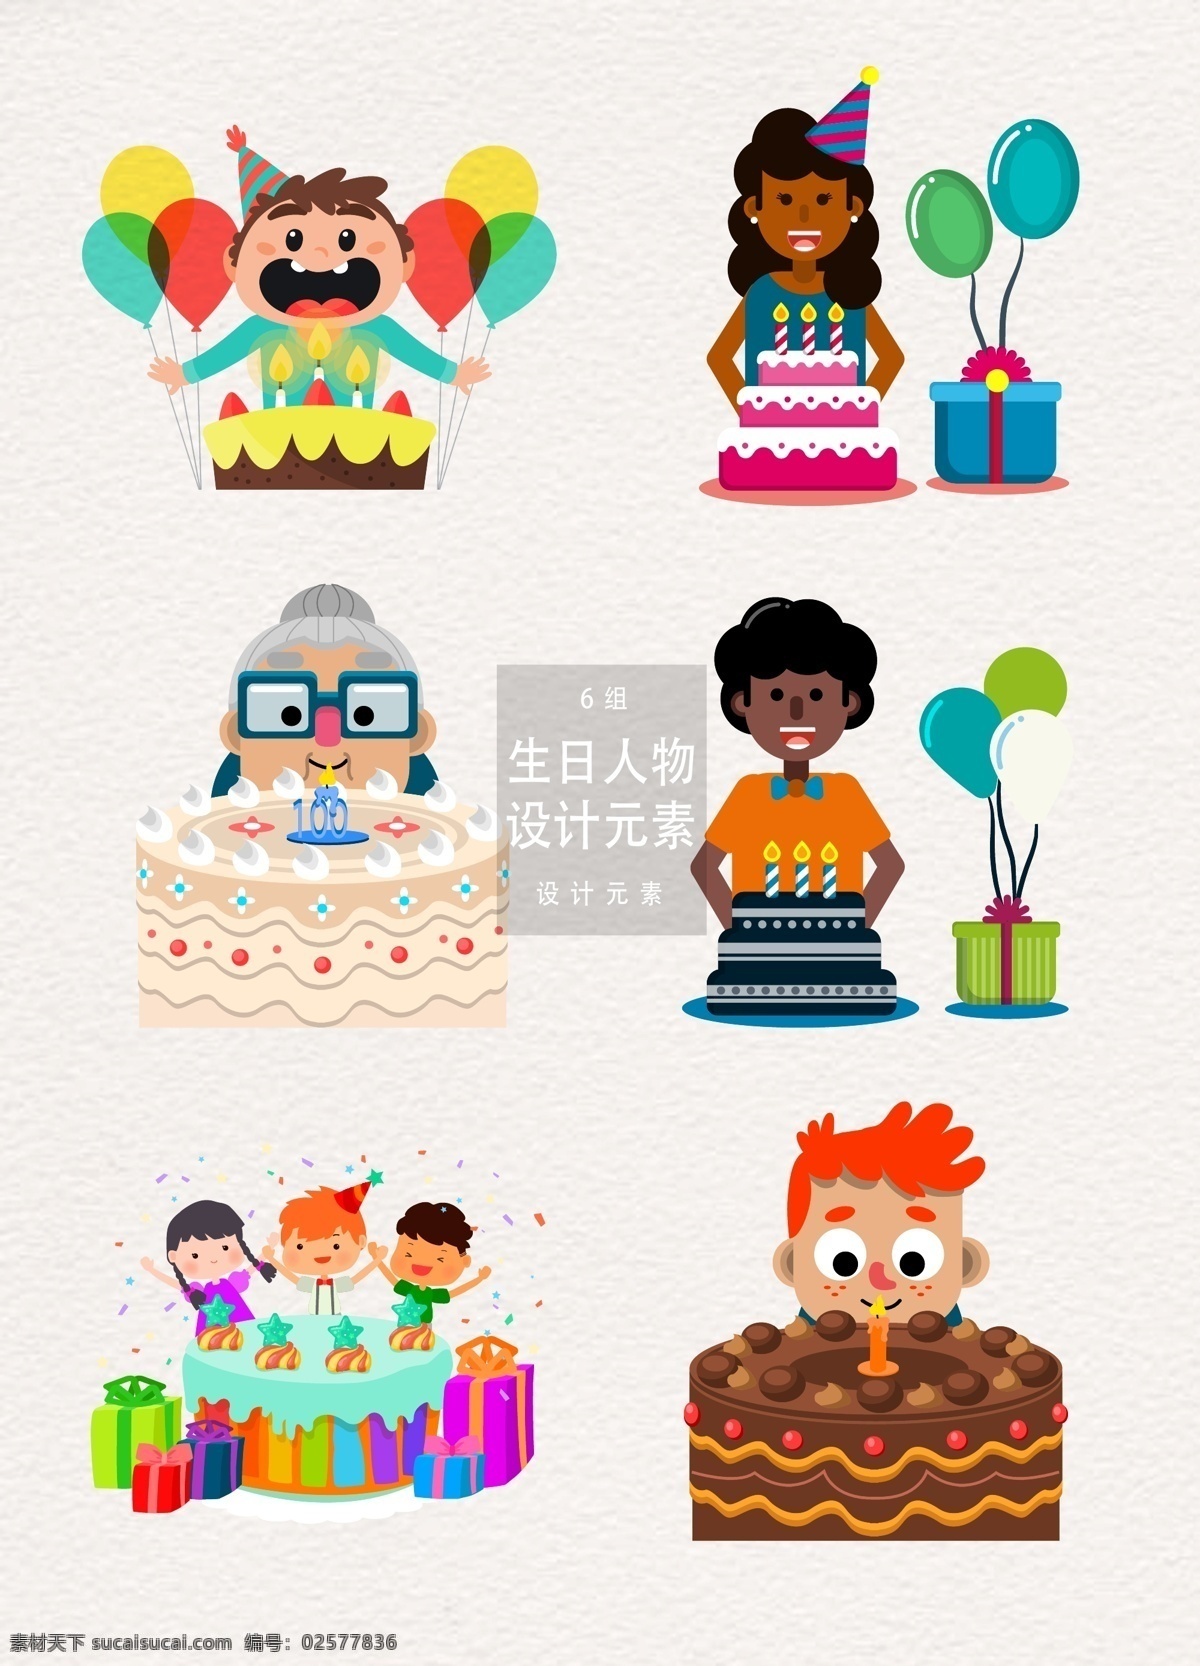 生日 人物 插画 元素 生日蛋糕 孩子 气球 礼物盒 设计元素 生日插画 人物插画 庆祝 生日派对 老人 儿童 庆生